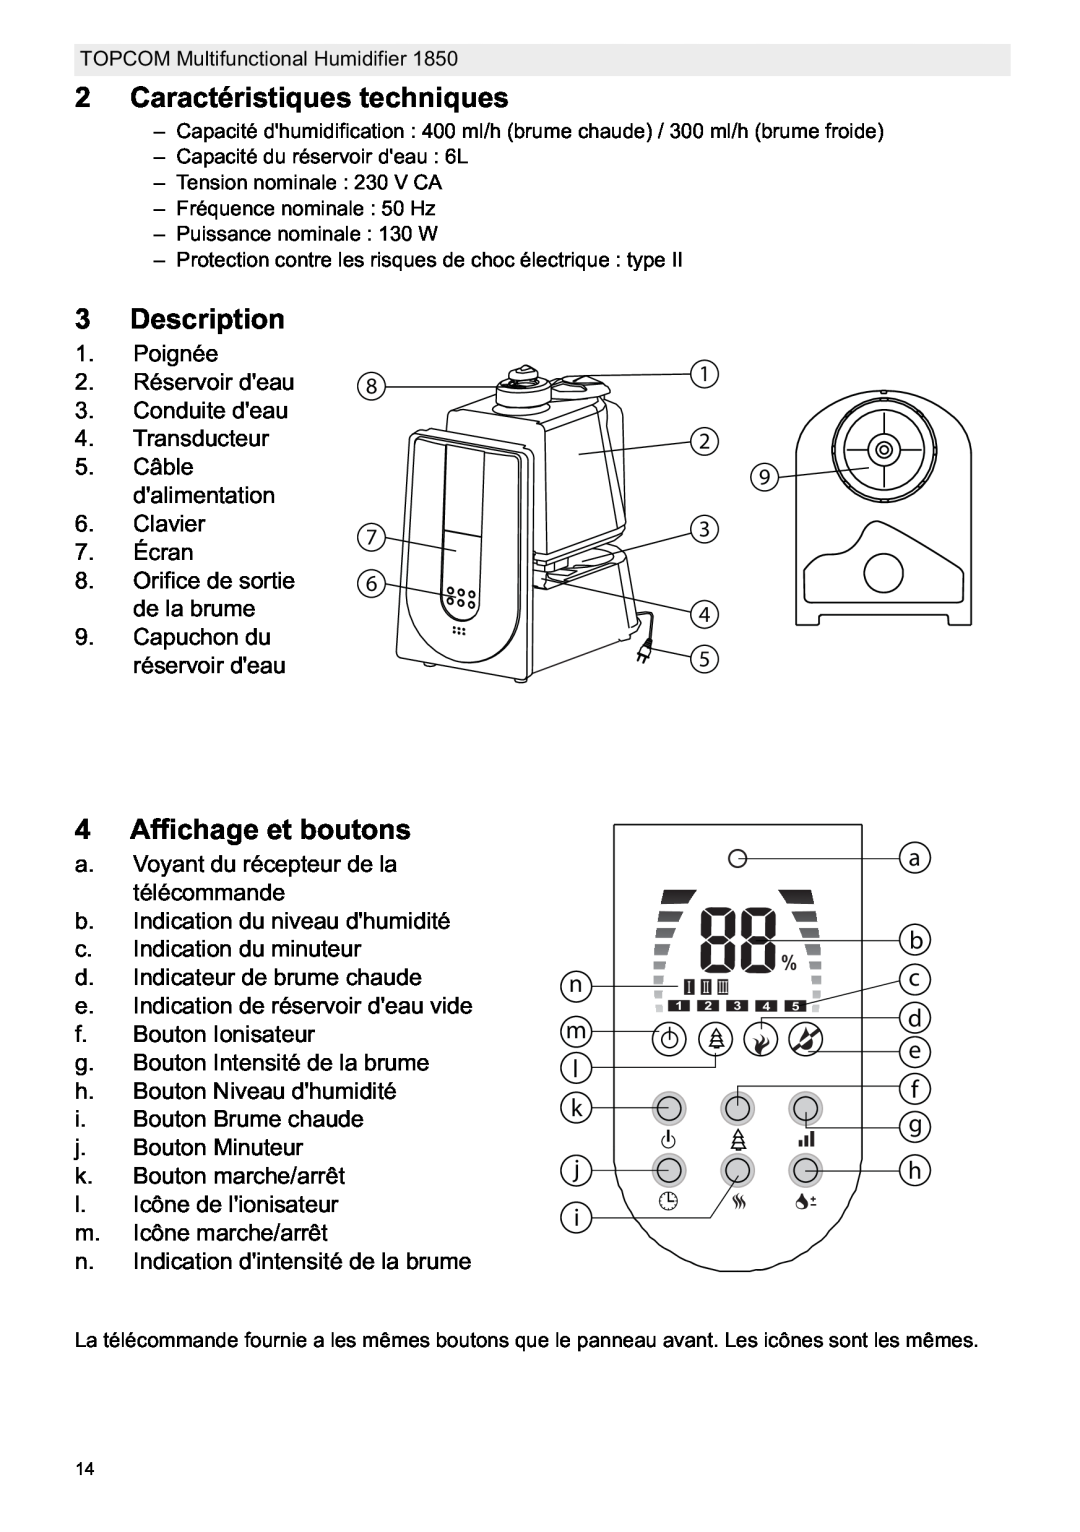 Topcom 1850 manual do utilizador Caractéristiques techniques, Affichage et boutons, Description, Poignée 